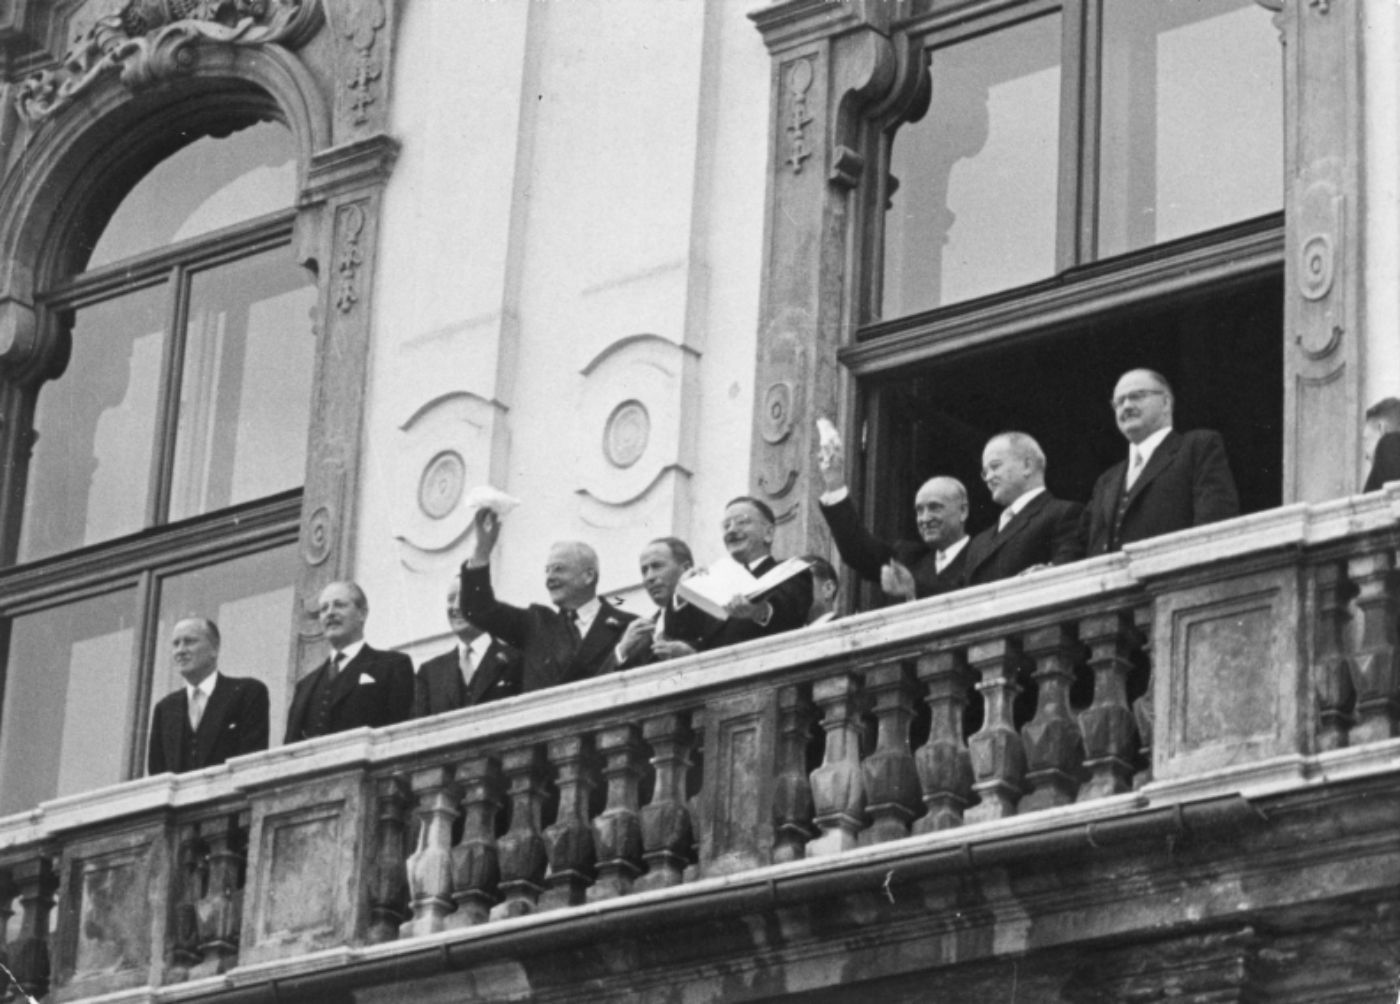 Schwarz-weiß-Foto zur Illustration. Das Foto zeigt Leopold Figl und mehrere Männer in Anzügen auf dem Balkon des Schlosses Belvedere. Leopold Figl hält ein geöffnetes Buch (den Staatsvertrag) in seinen Händen.